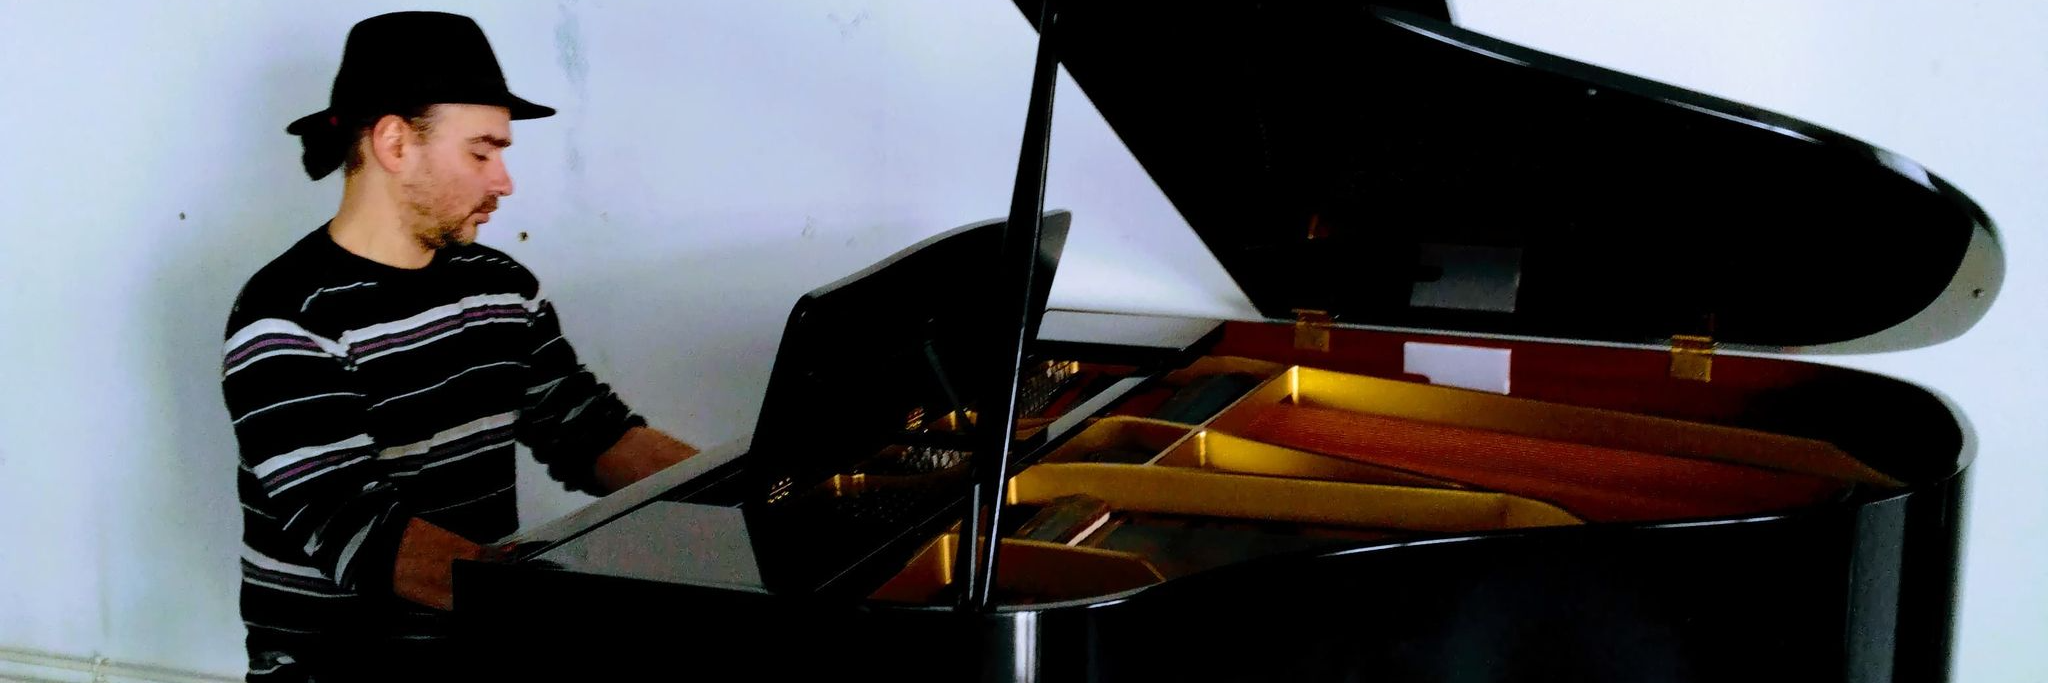 DUO PIANO / VOIX LYRIQUE, musicien Chanteur en représentation à Marne - photo de couverture